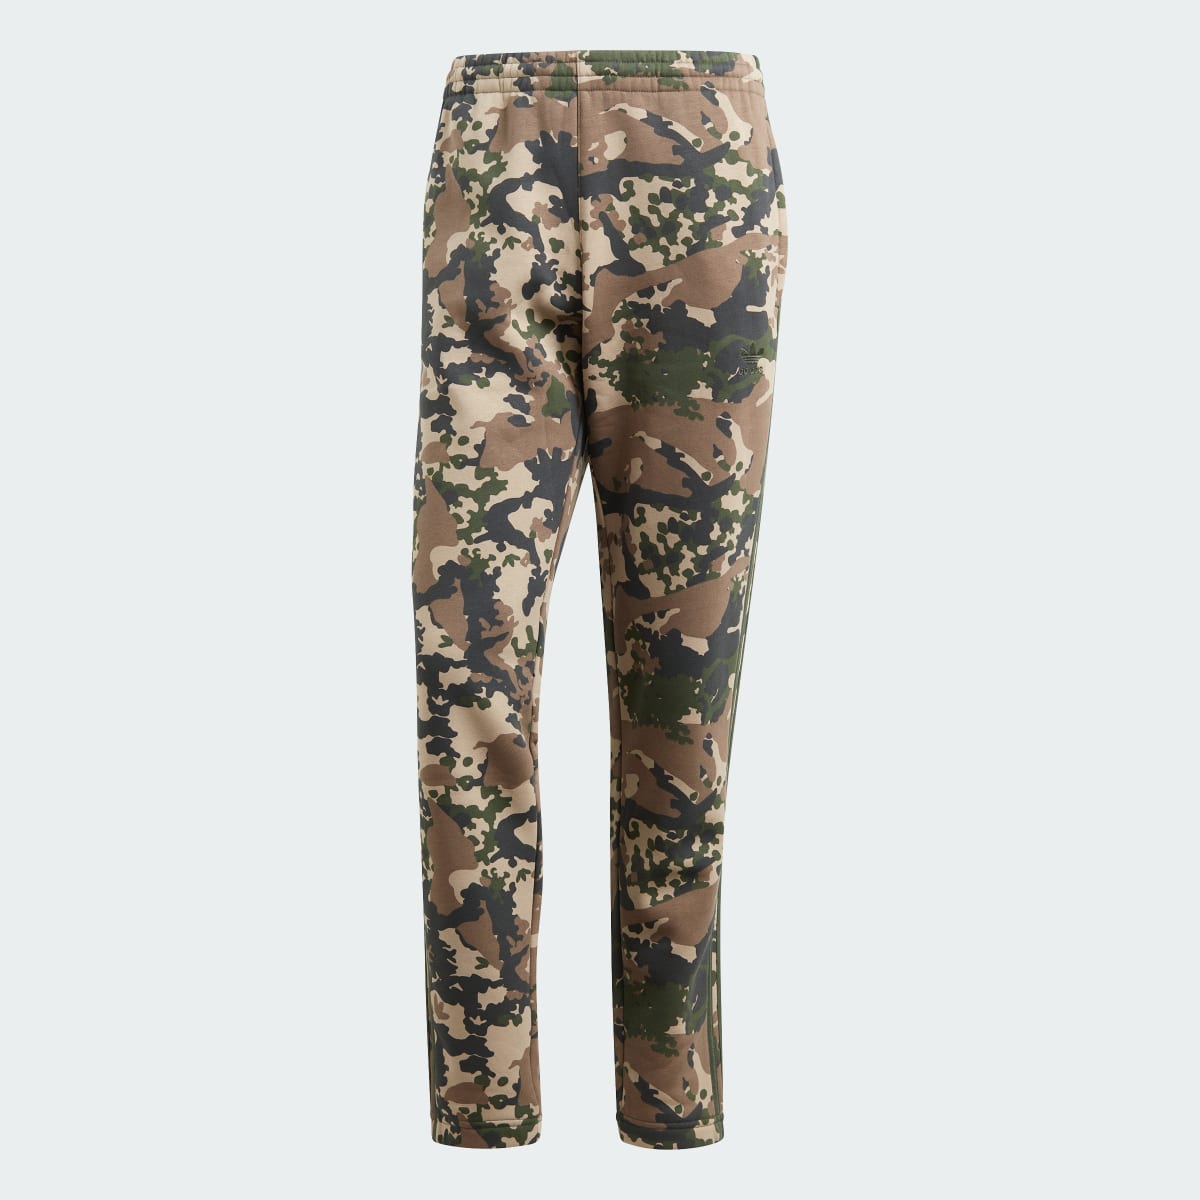 Adidas Pantalon de survêtement graphique à motif camouflage. 4